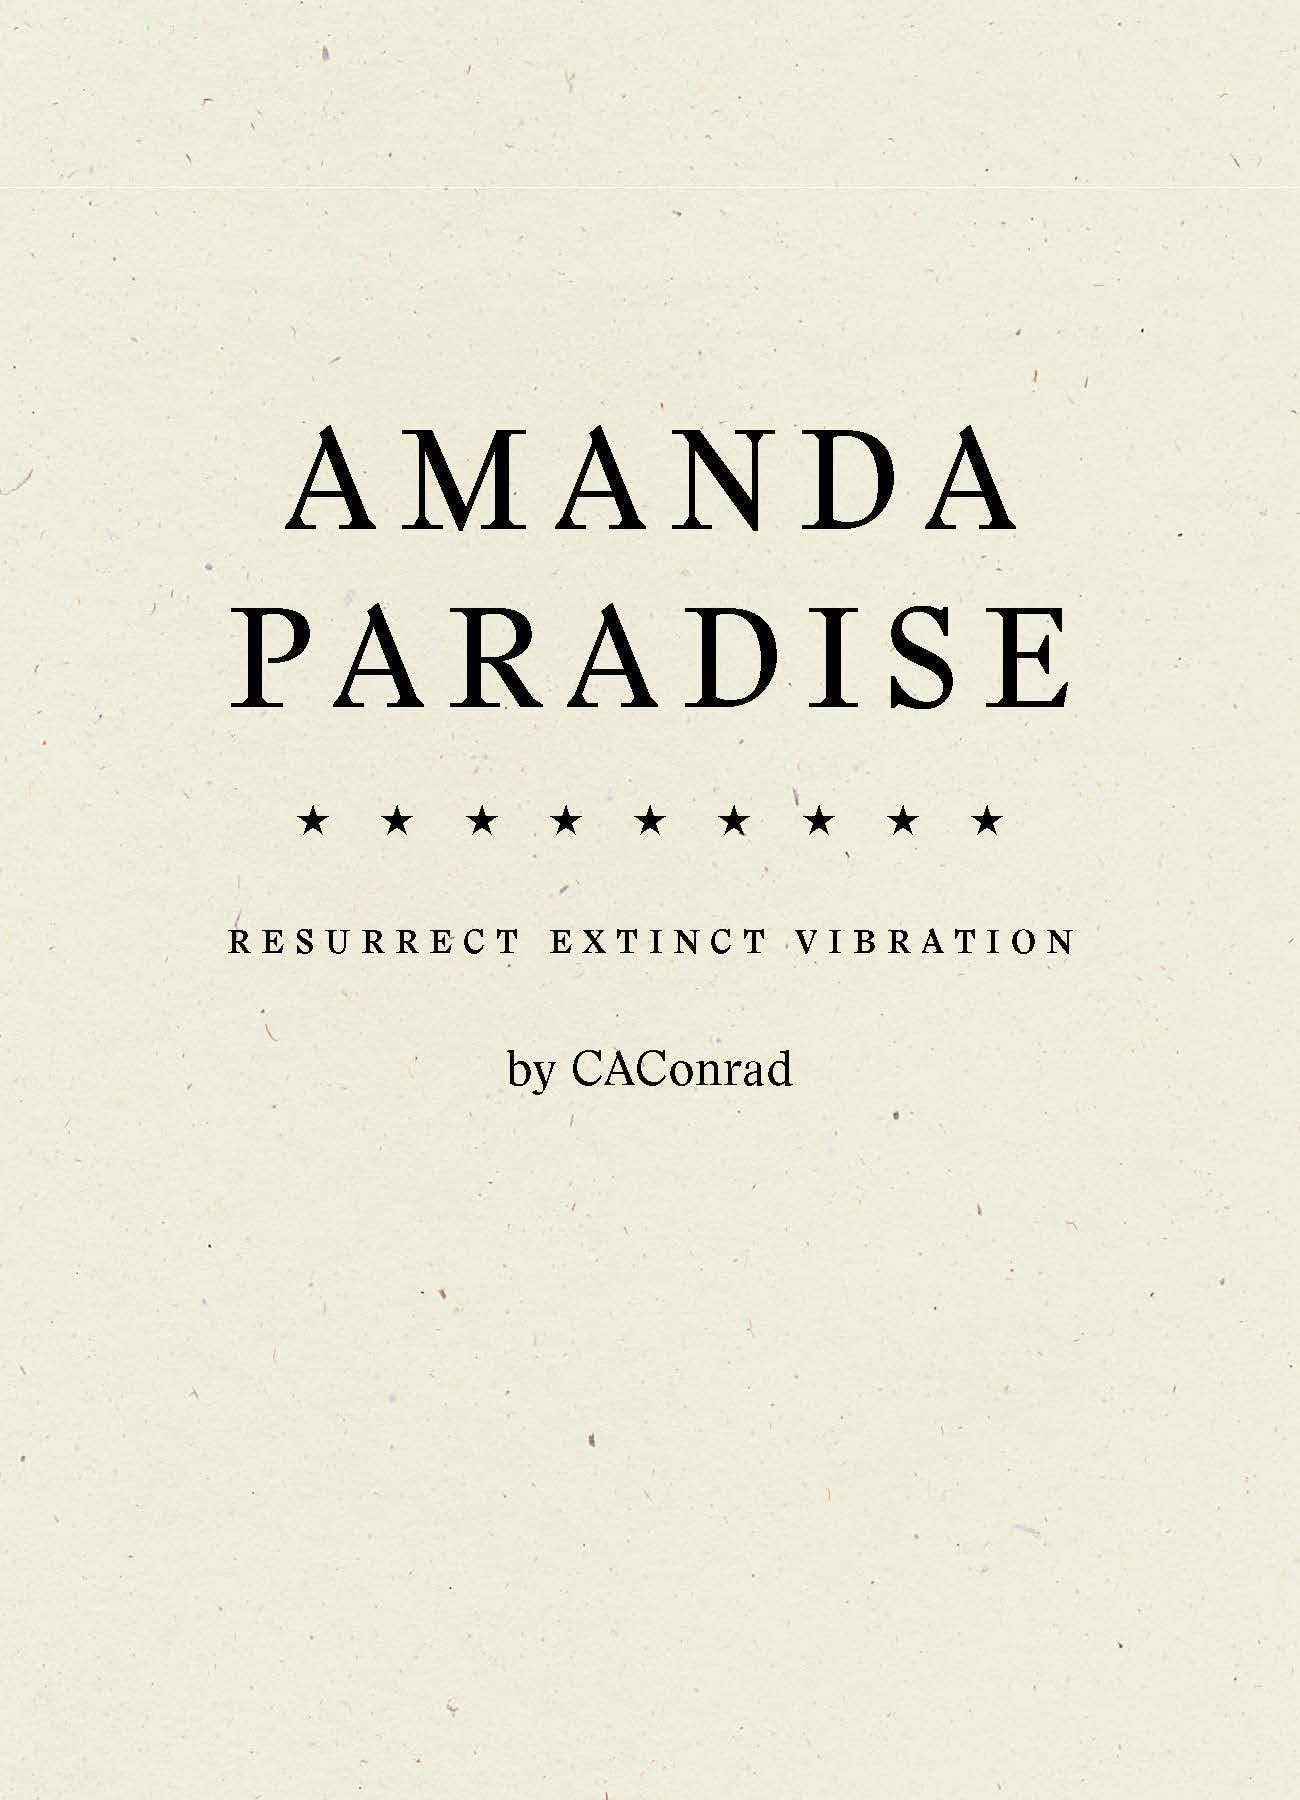 Amanda Paradise: Resurrect Extinct Vibration, by CAConrad